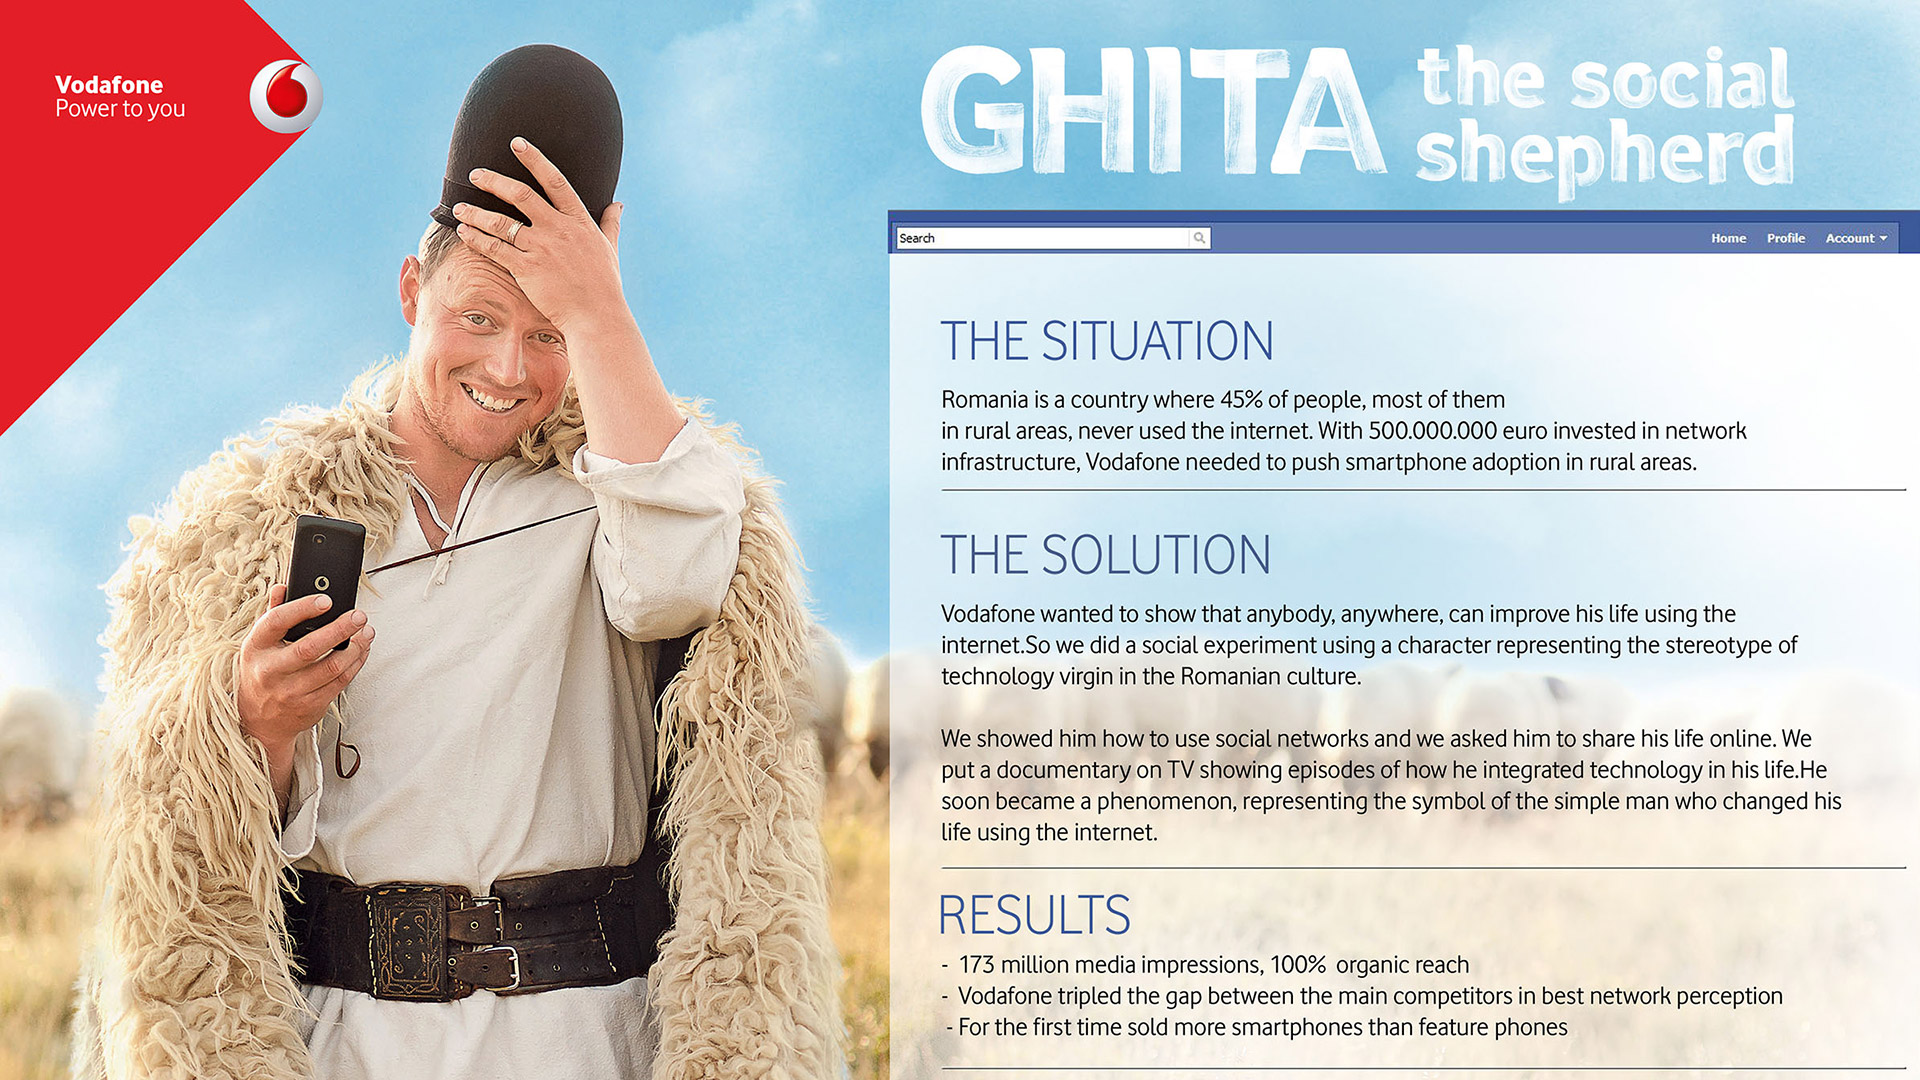 Ghita, The Social Shepherd